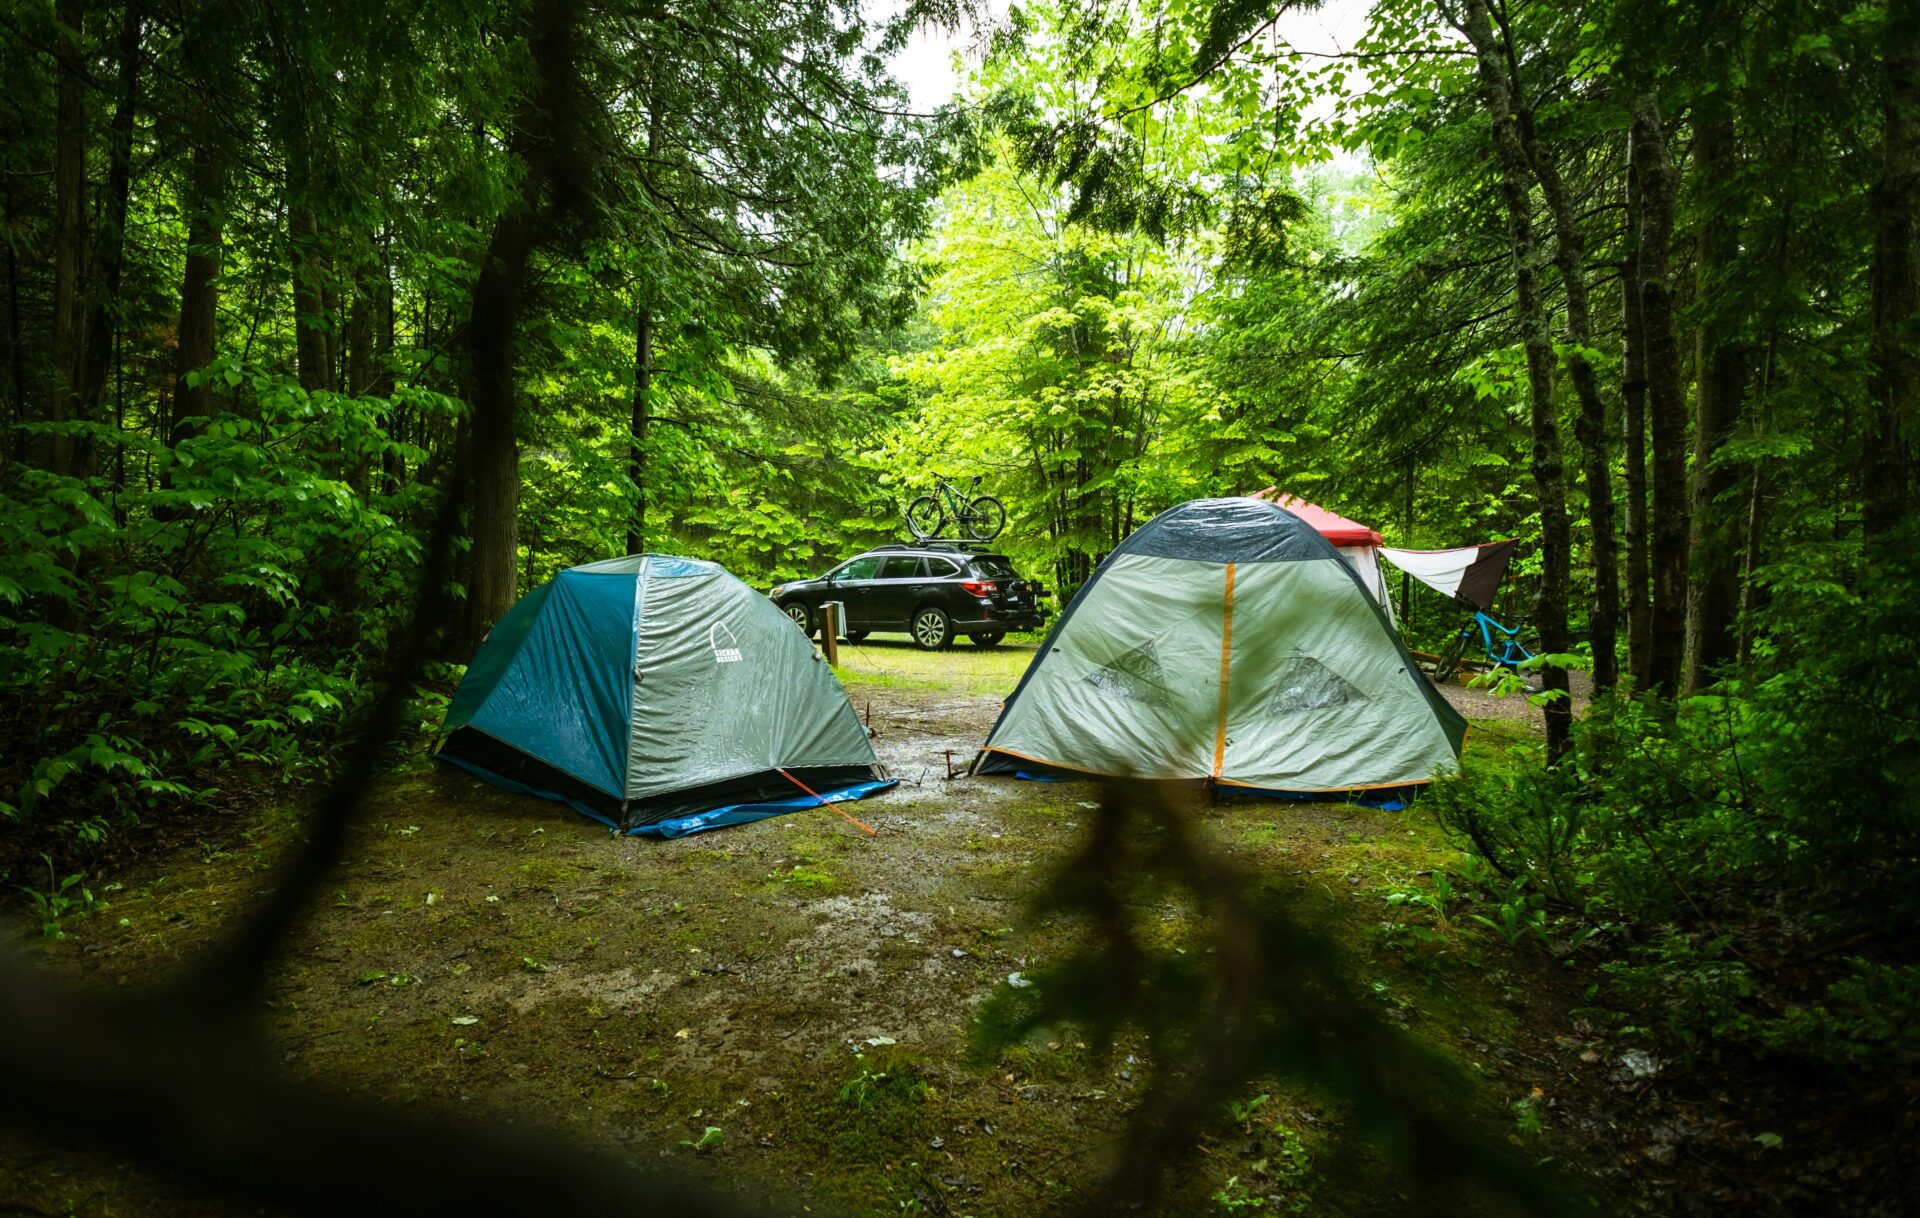 雨キャンプを快適に過ごす対策と楽しみ方。必需品や注意点も解説